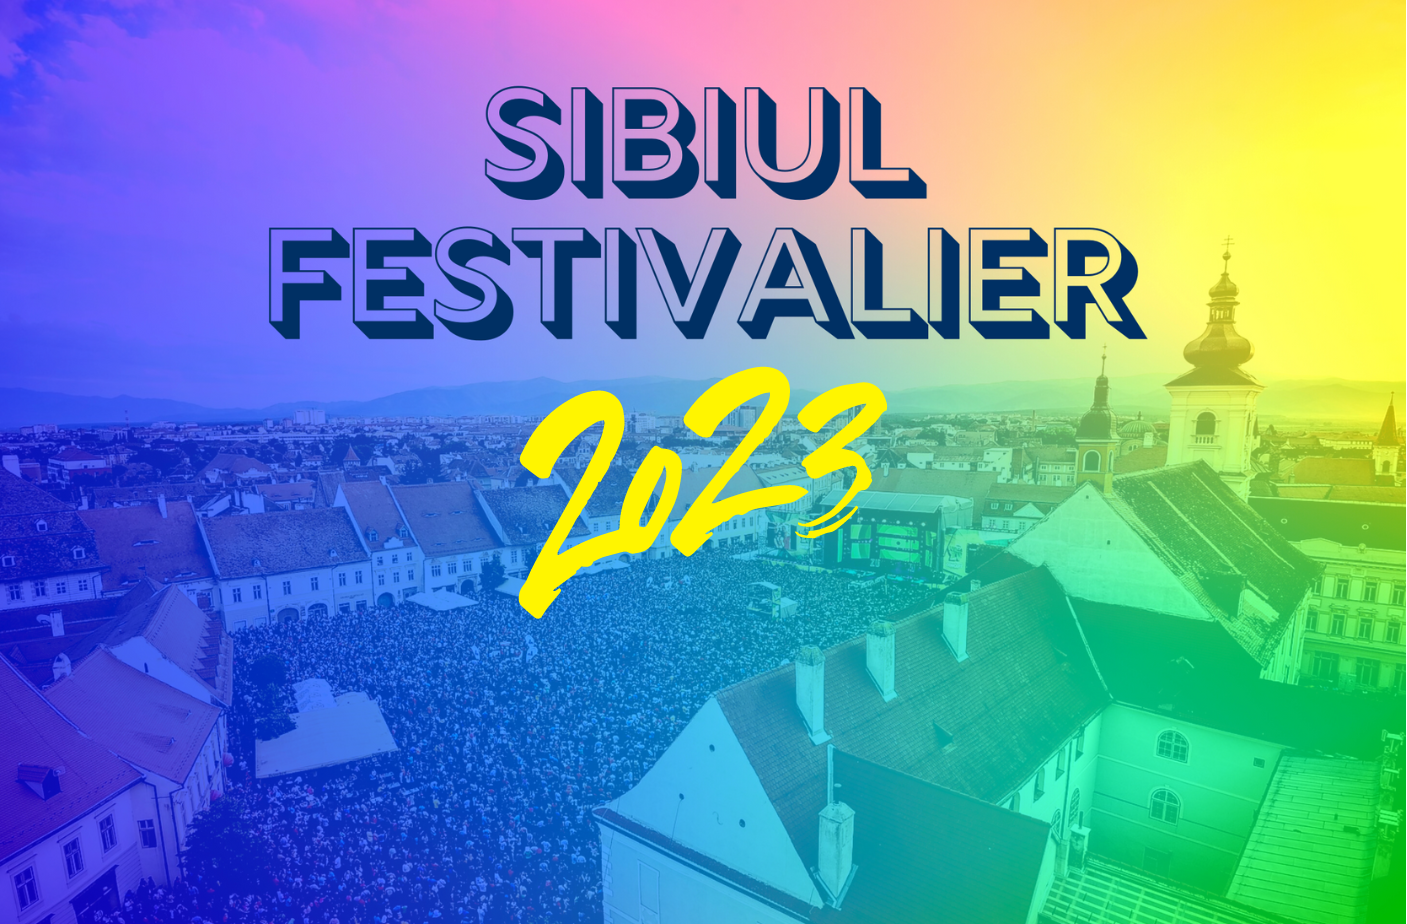 Sibiul Festivalier în 2023